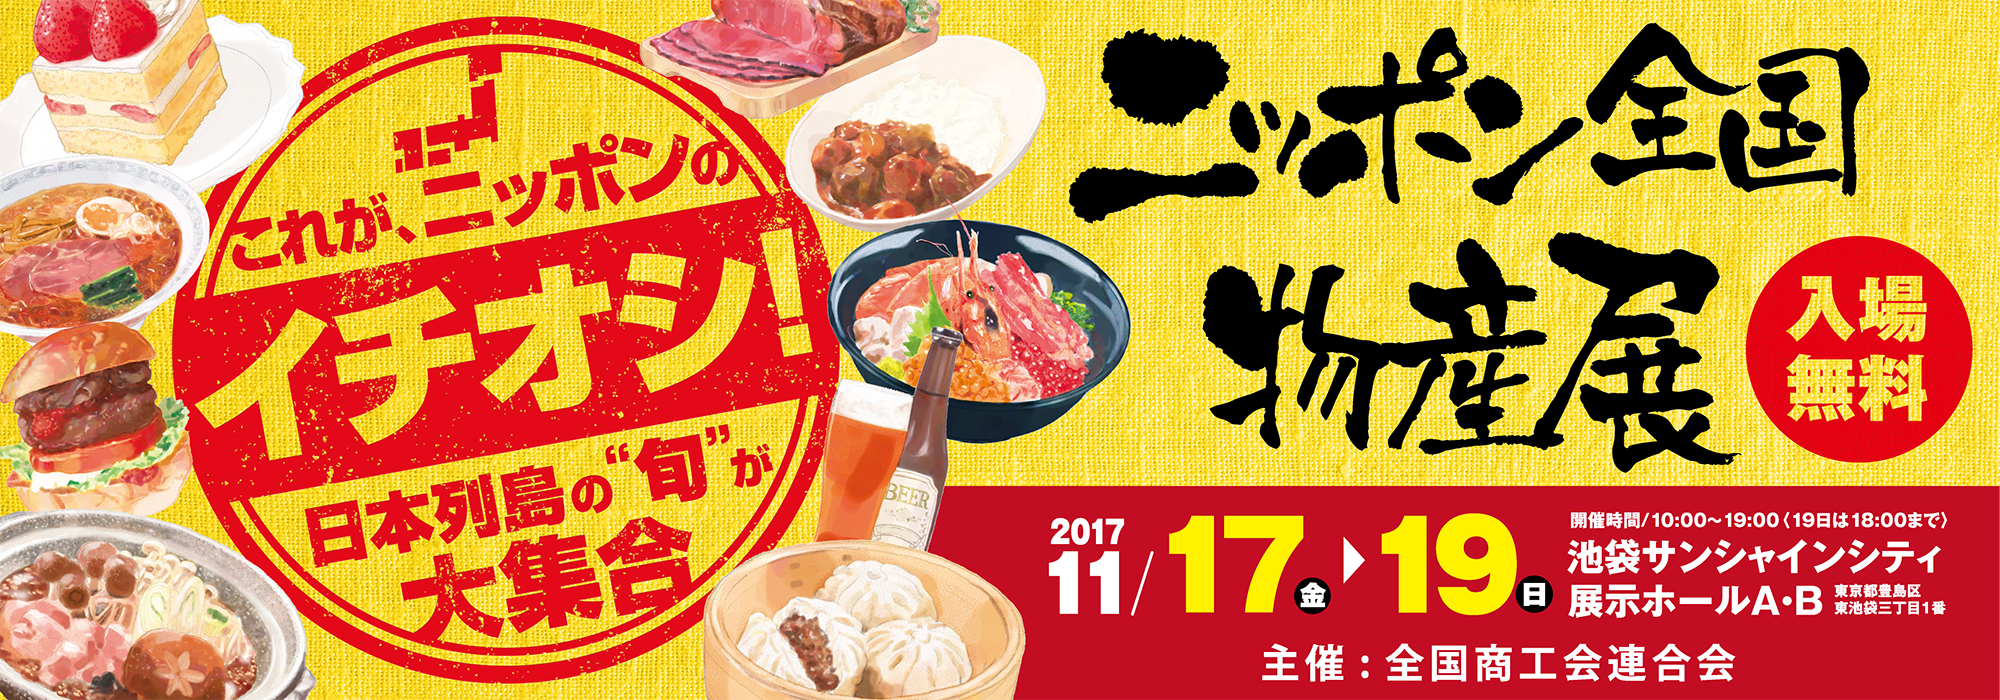 ニッポン全国物産展2017